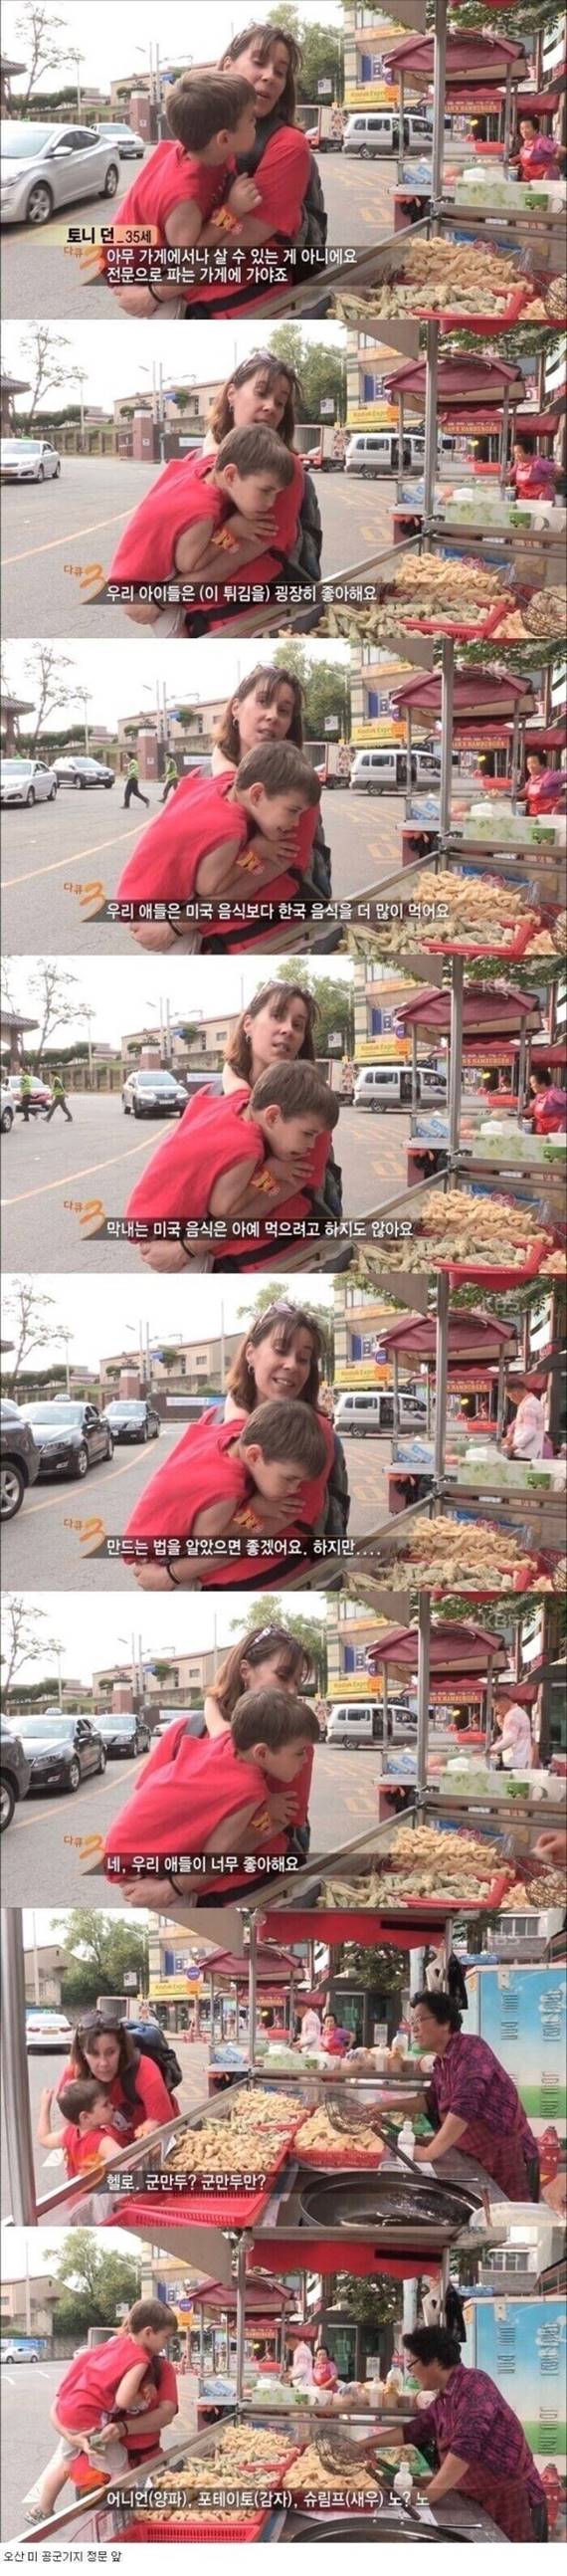 아이가 외국음식만 먹어서 걱정인 엄마.jpg